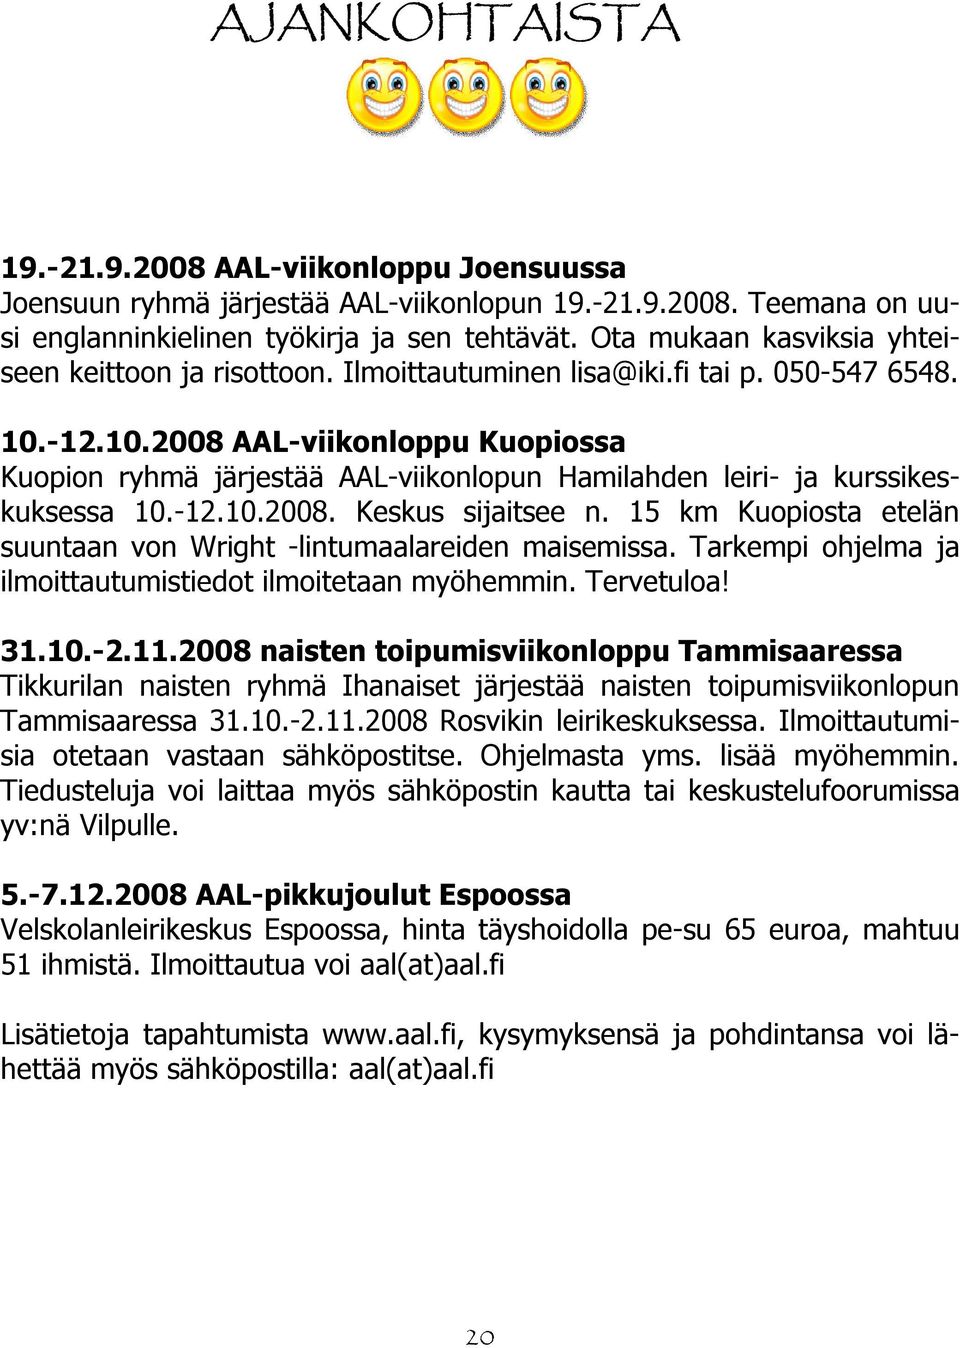 -12.10.2008 AAL-viikonloppu Kuopiossa Kuopion ryhmä järjestää AAL-viikonlopun Hamilahden leiri- ja kurssikeskuksessa 10.-12.10.2008. Keskus sijaitsee n.